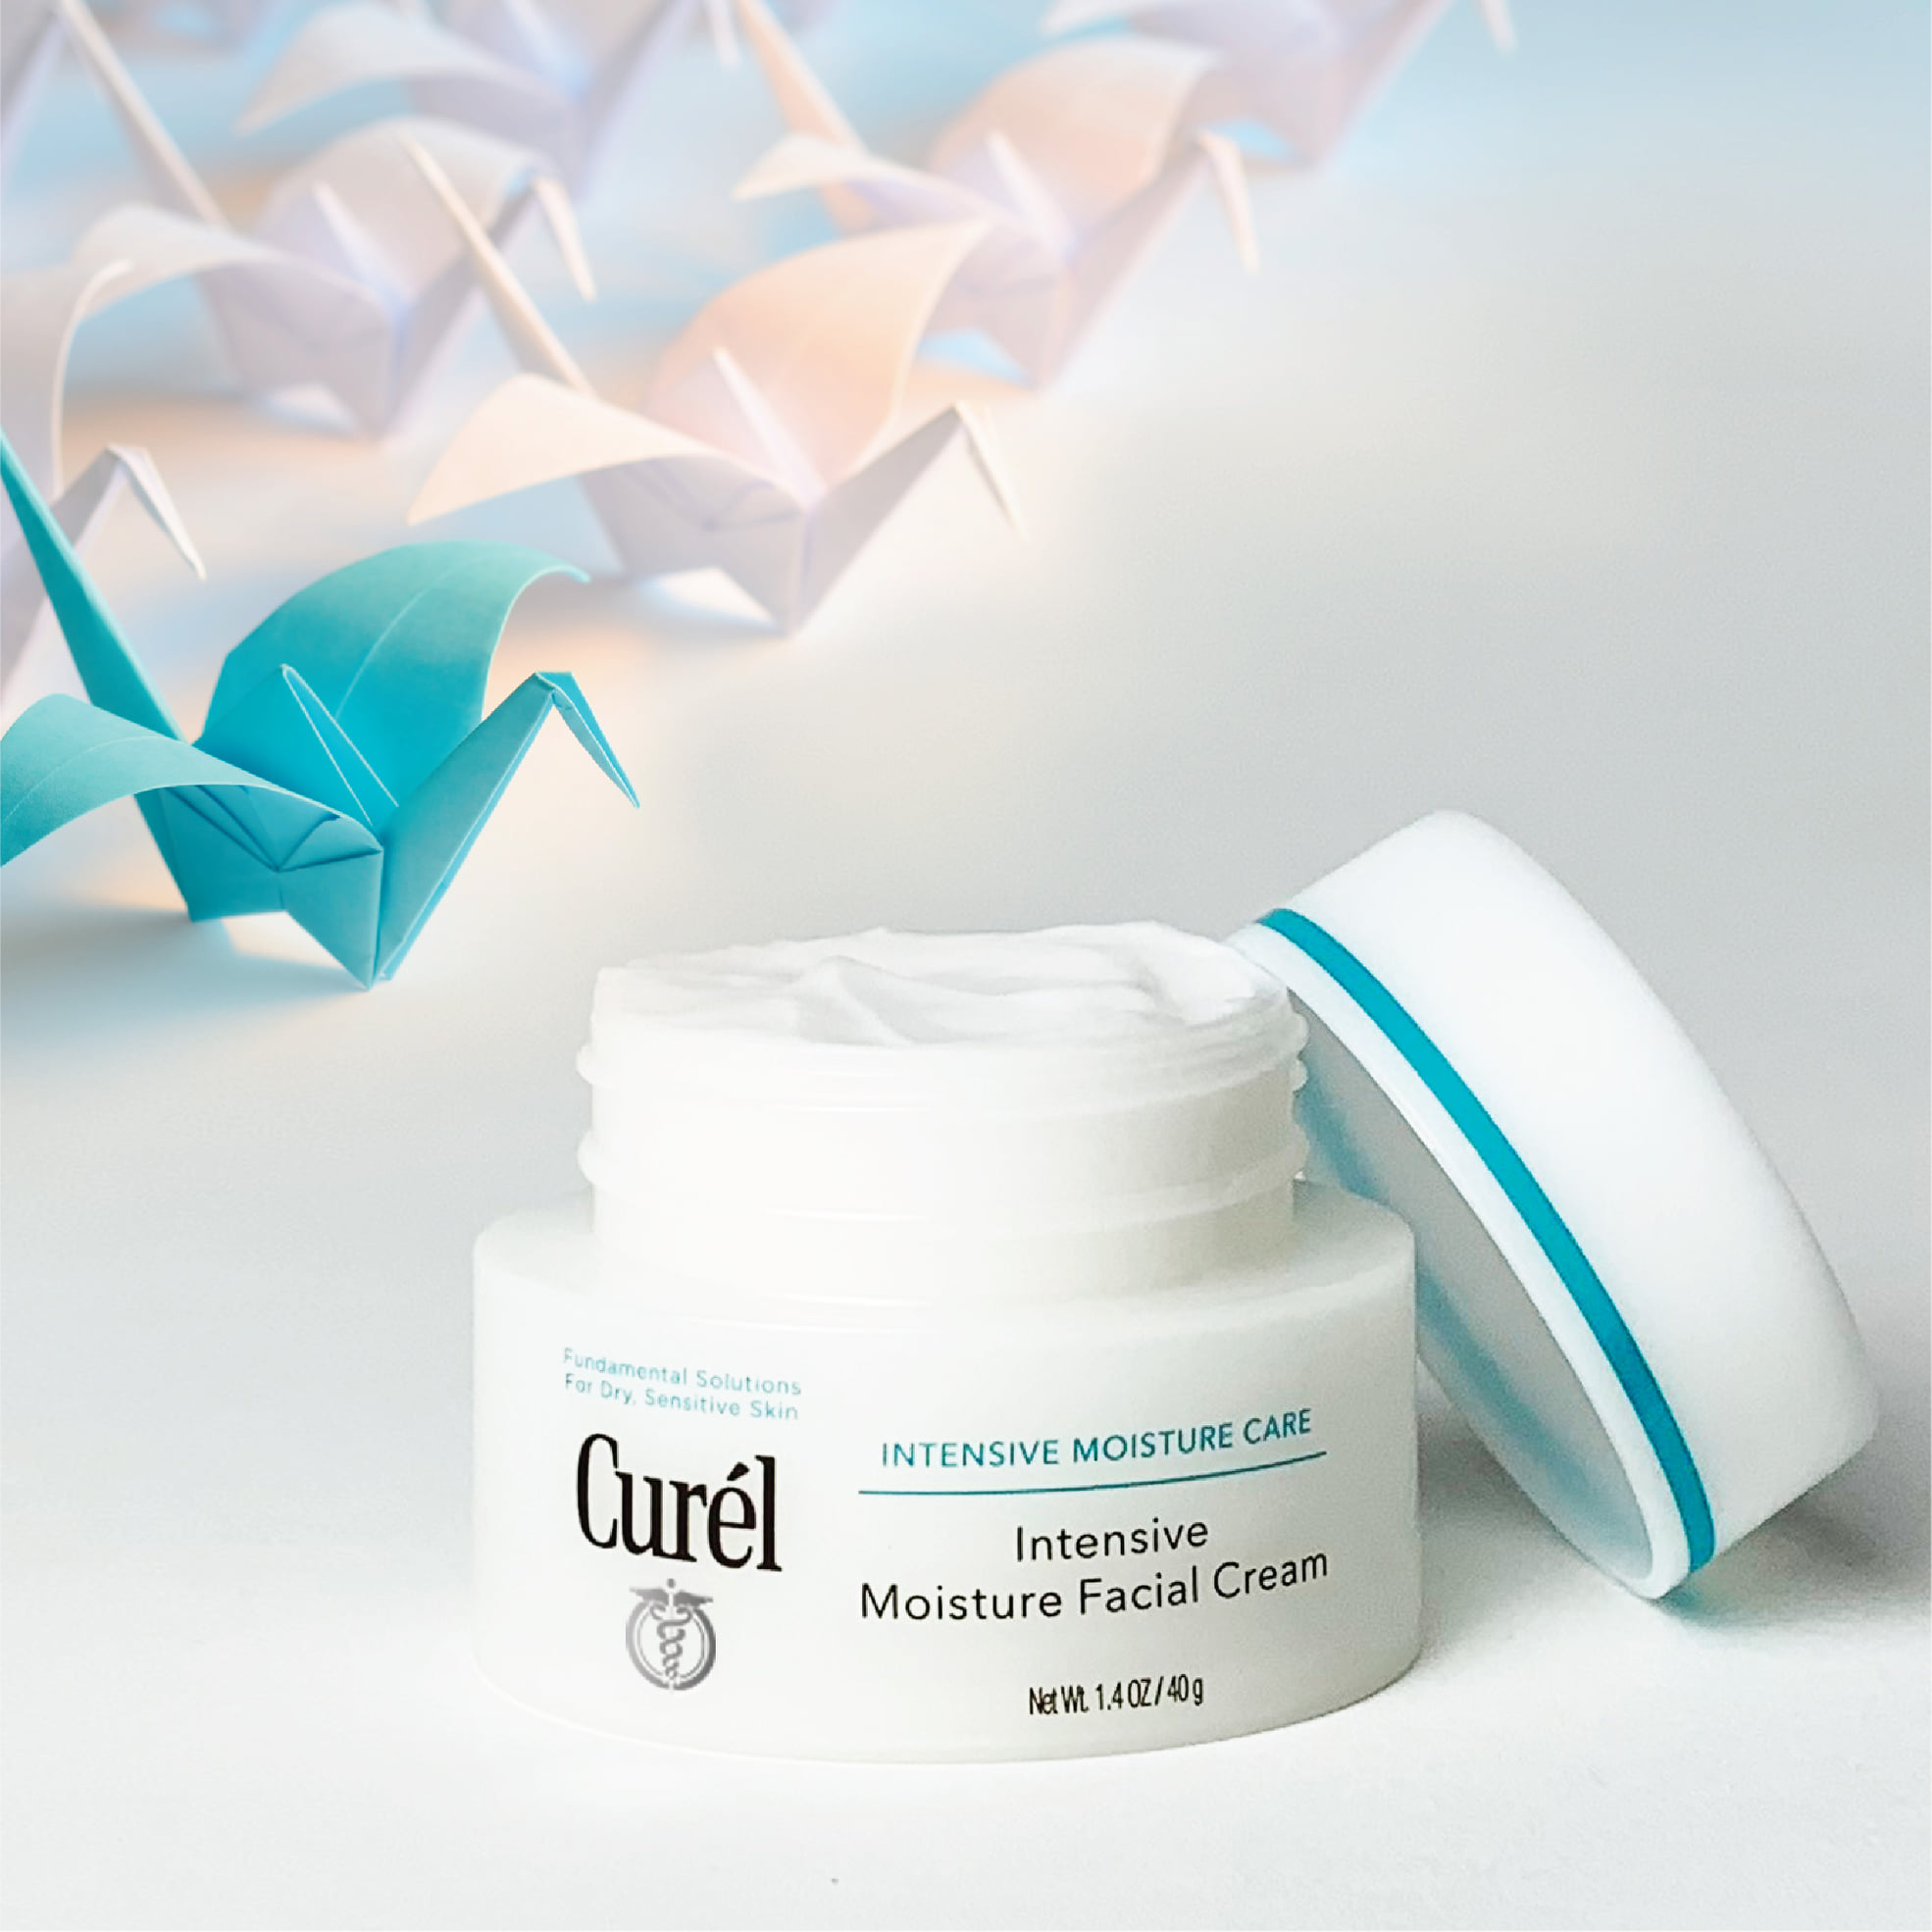 Curel Intensive Moisture Care Foaming Facial Cream